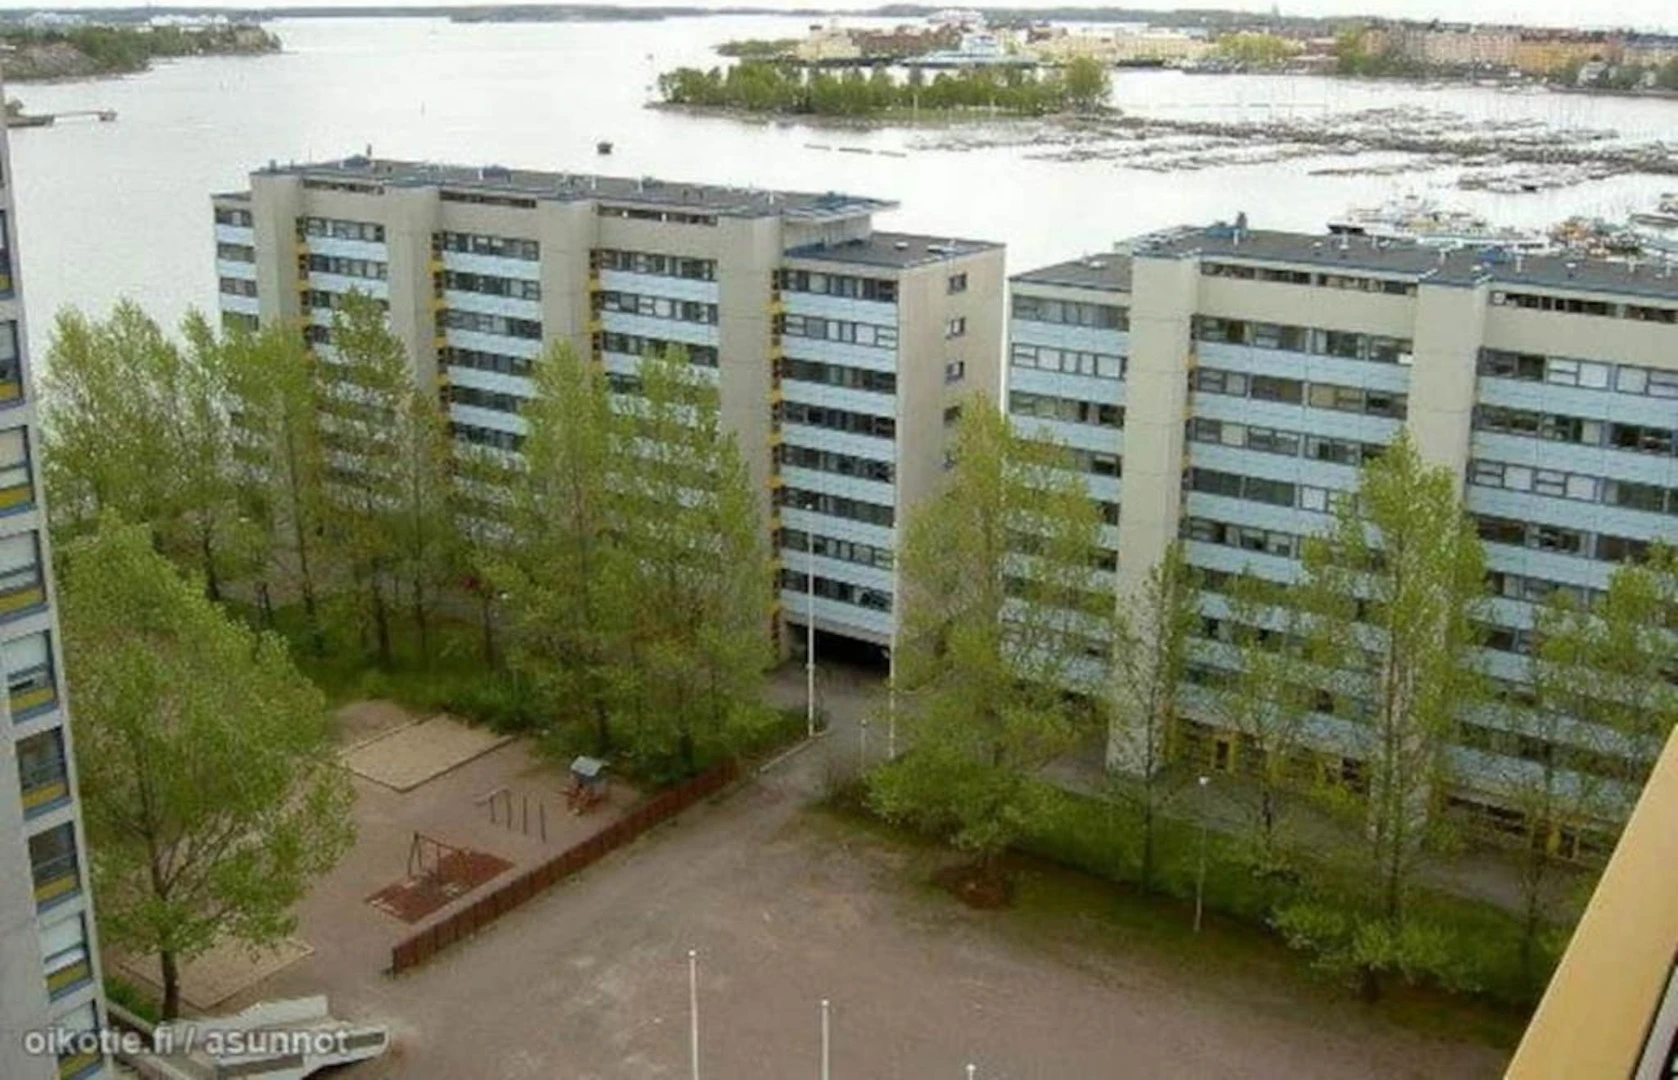 Helsinki de çift kişilik yataklı kiralık oda